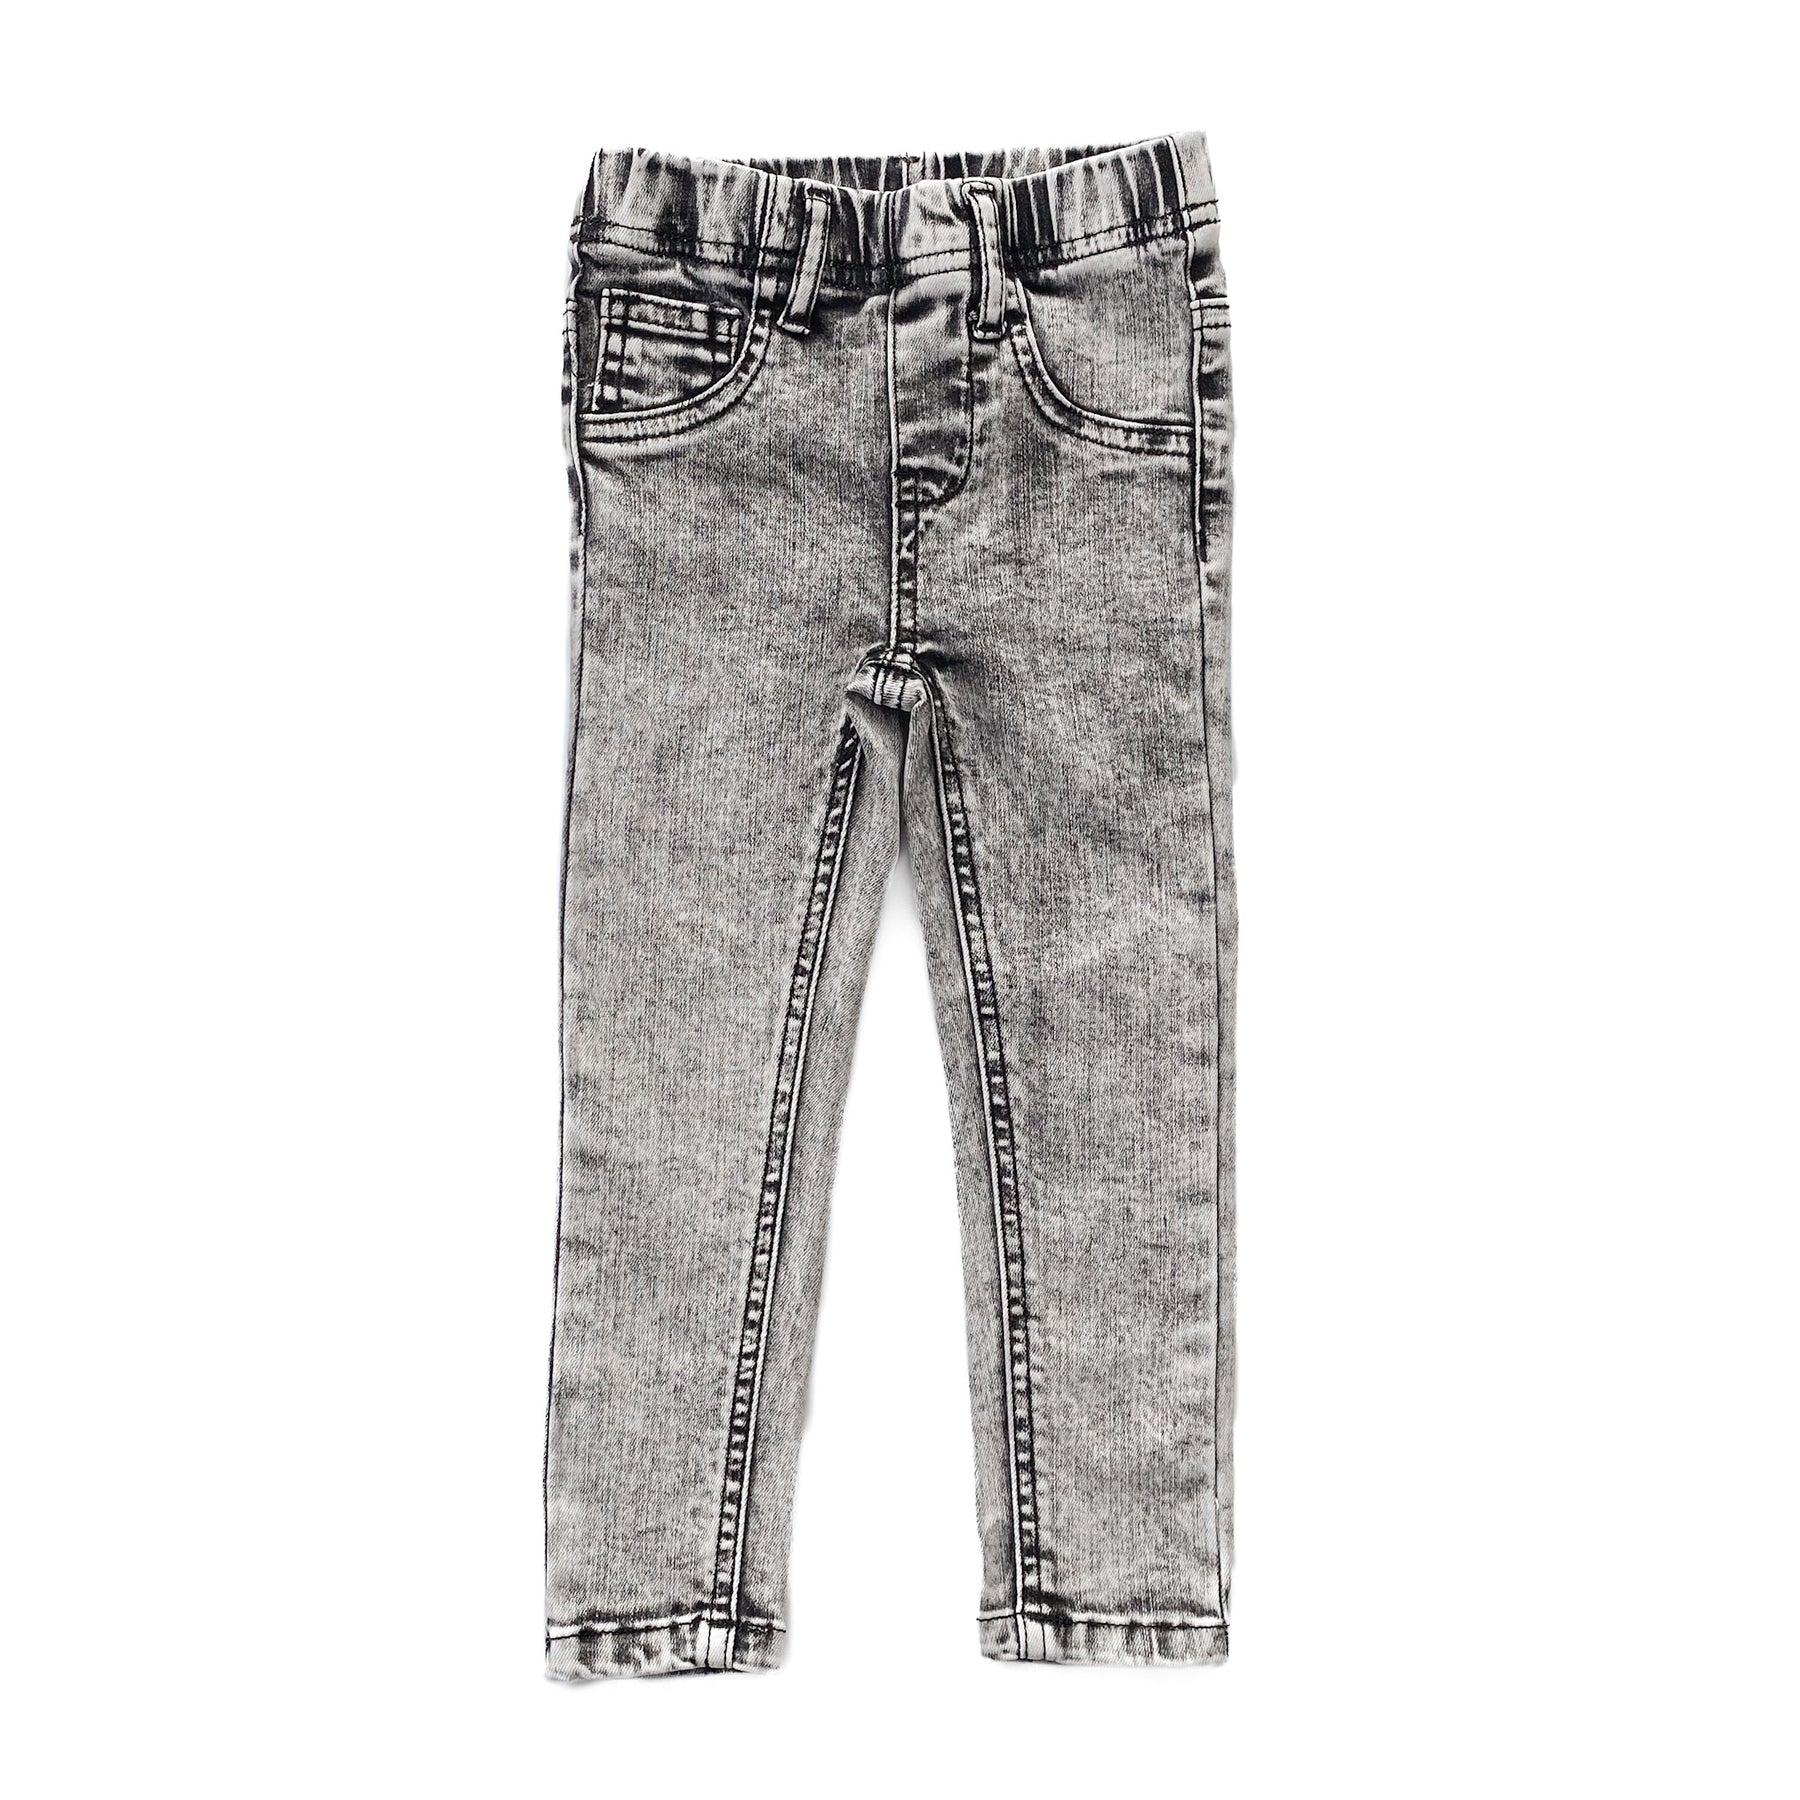 Skinny High Jeans - Grey - Ladies | H&M IN